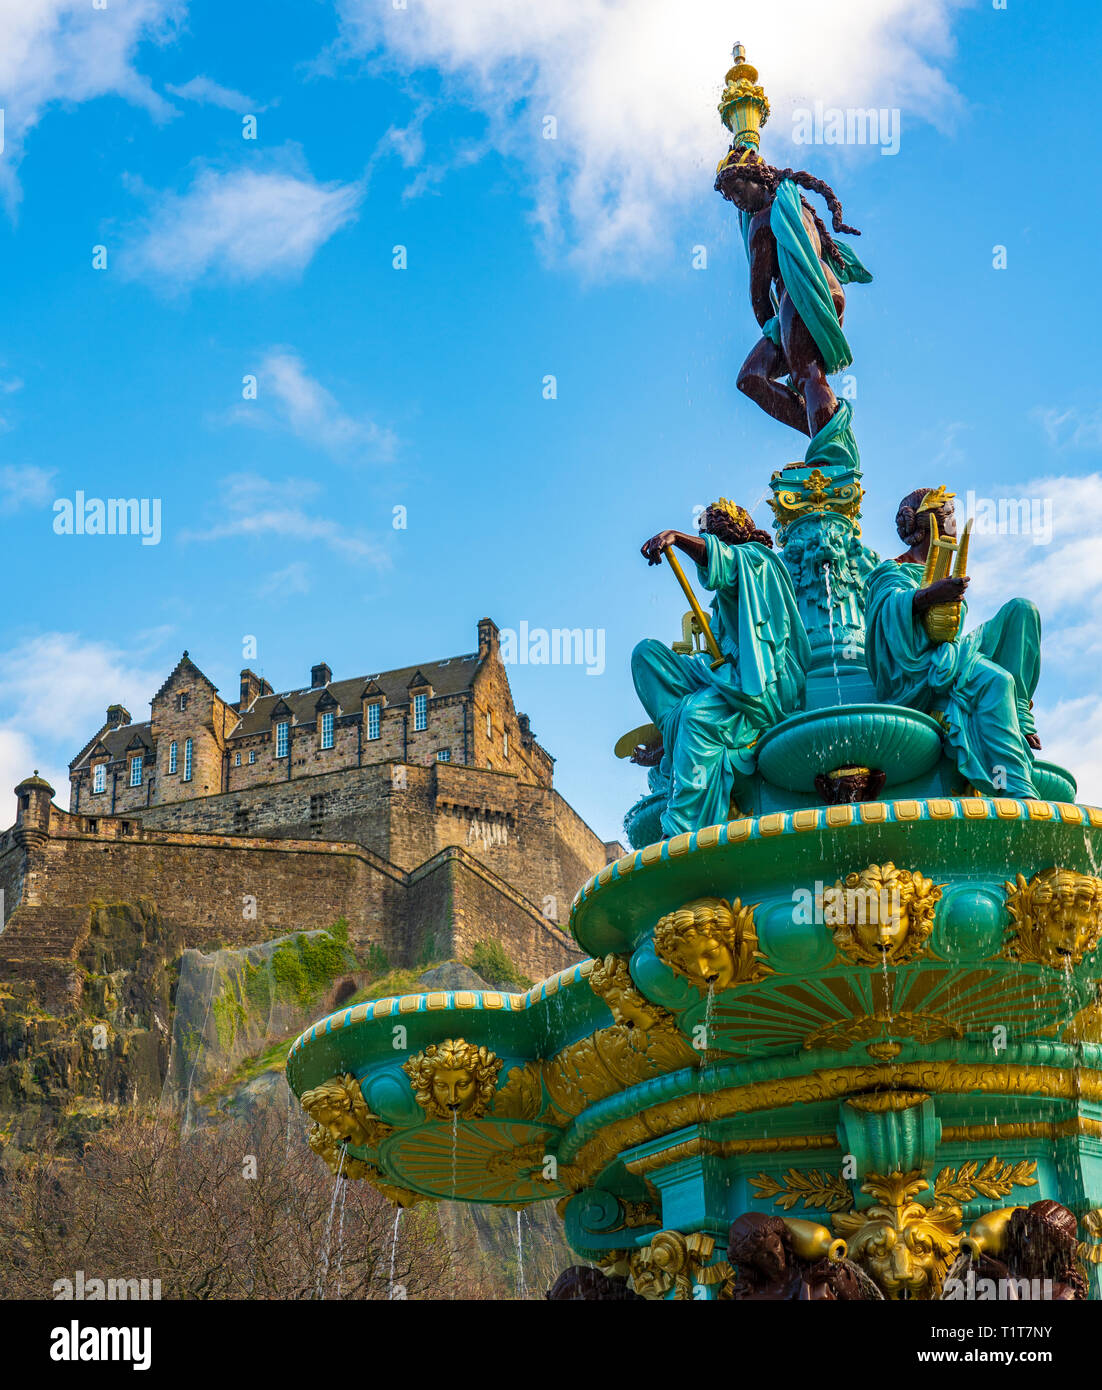 Ross Fontaine en couleurs d'origine après 2018 avec la rénovation du Château d'Édimbourg à l'arrière dans les jardins de Princes Street, Edinburgh, Scotland, UK Banque D'Images